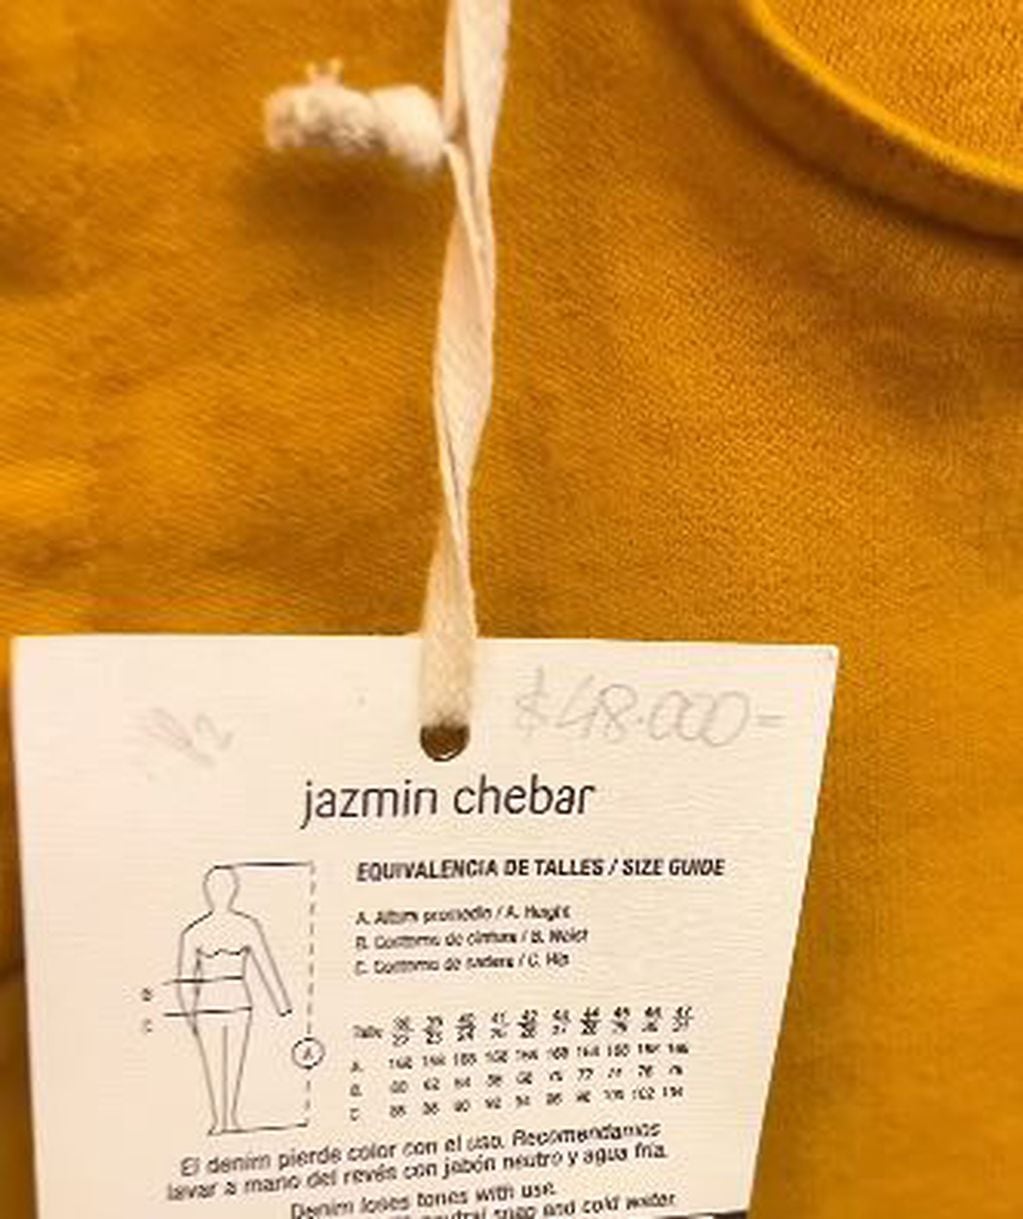 Los jeans de Jazmín Chebar que venden en el outlet por $48.000.